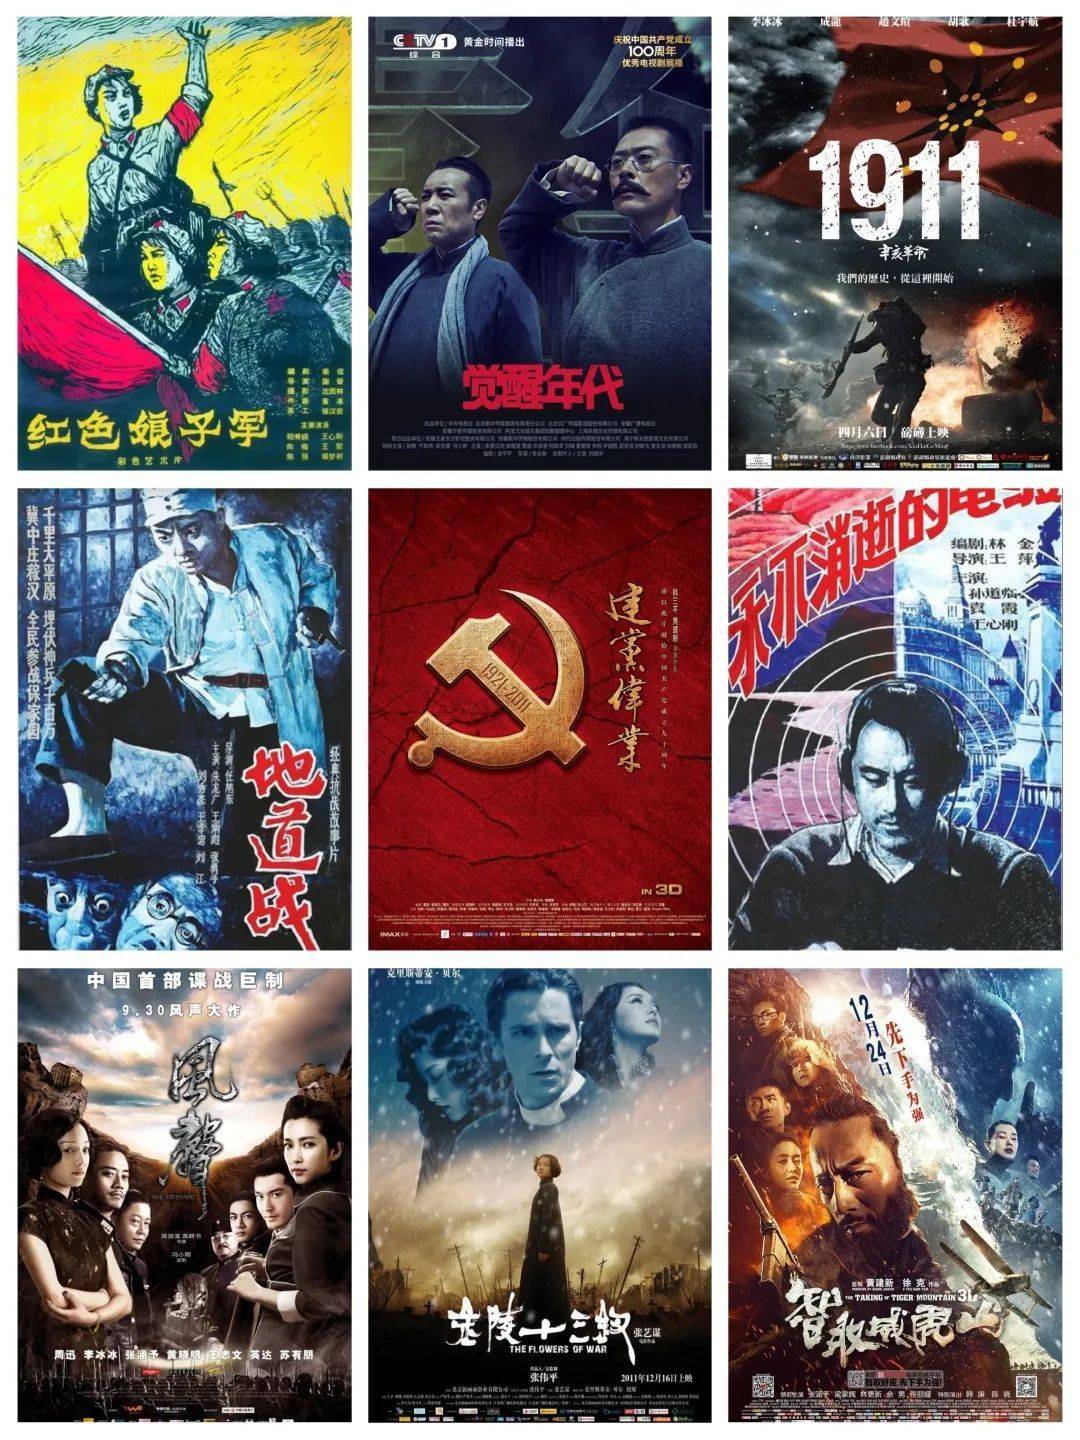 党史永驻我心"红色经典电影配音大赛今年是中国共产党成立100周年,在"